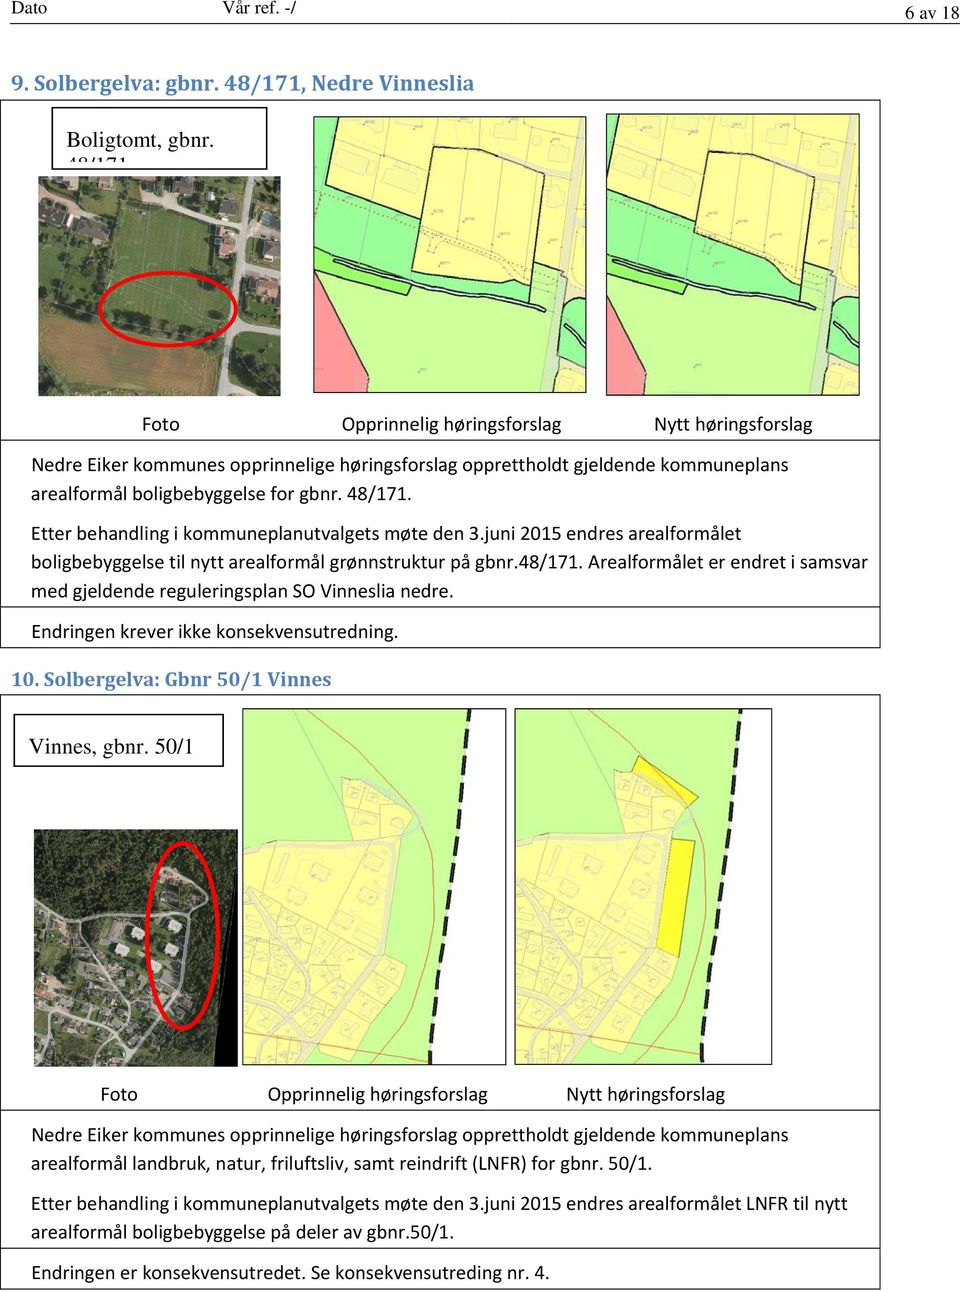 juni 2015 endres arealformålet boligbebyggelse til nytt arealformål grønnstruktur på gbnr.48/171. Arealformålet er endret i samsvar med gjeldende reguleringsplan SO Vinneslia nedre.